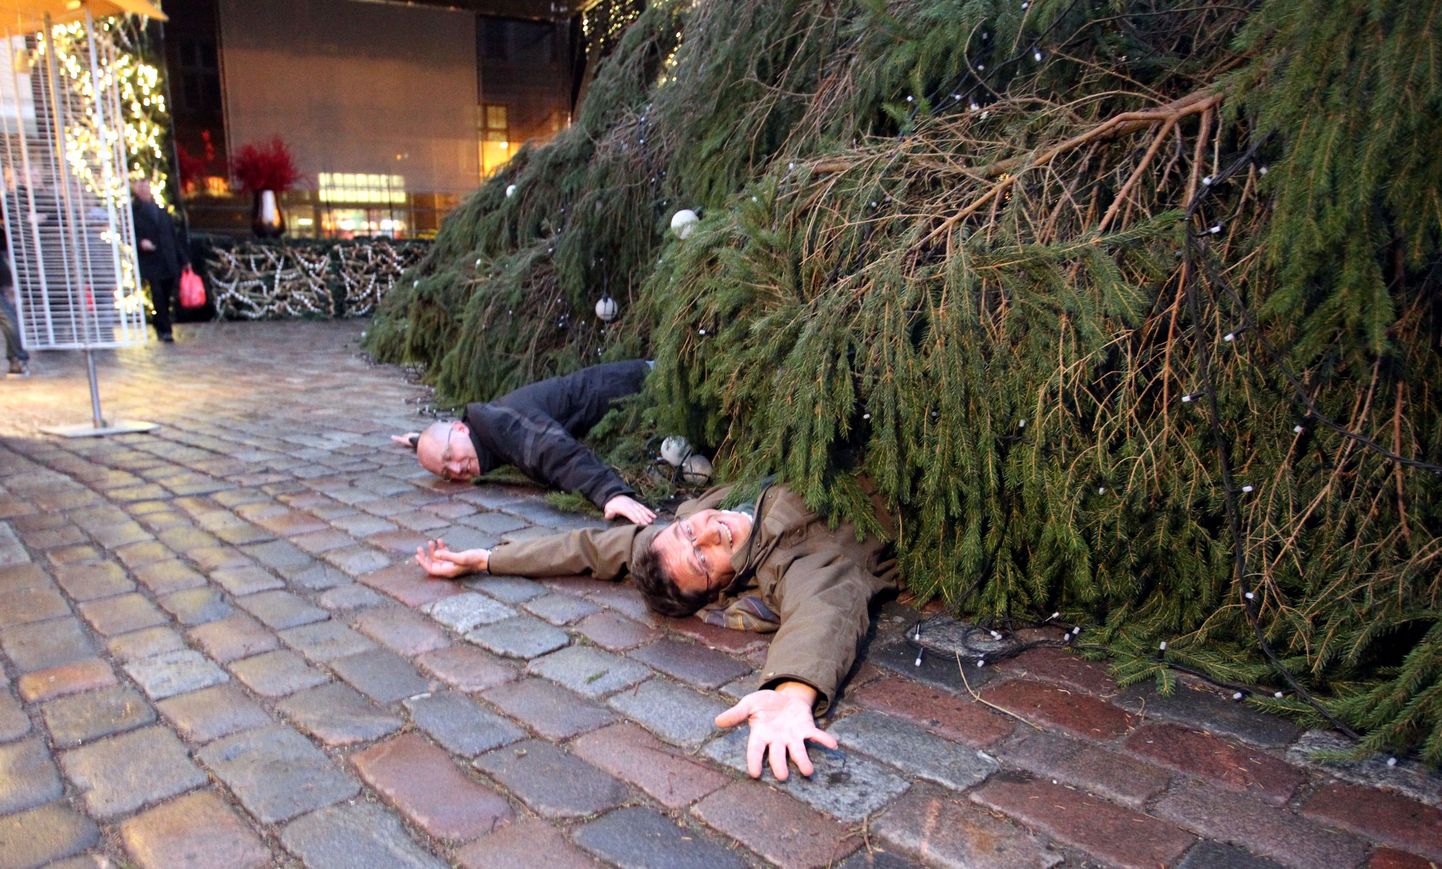 Kuusk Tallinna Raekoja platsil kukkus ümber. Inimesed juhtunus kannatada ei saanud, pildil teevad turistid nalja.